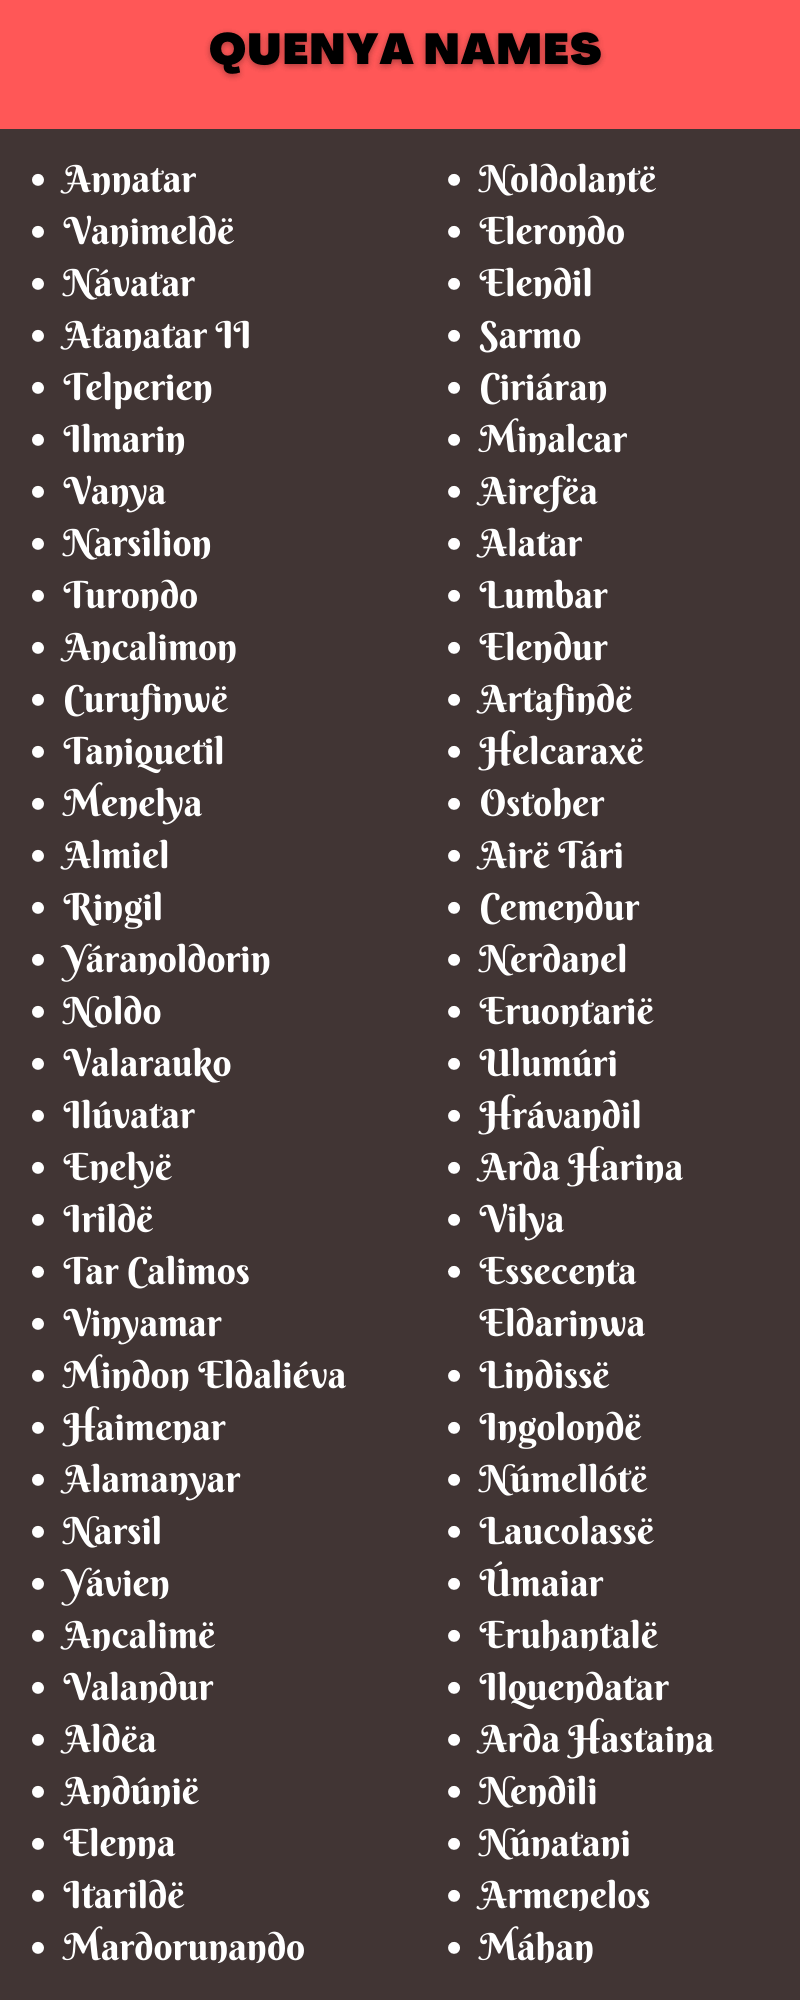 Quenya Names